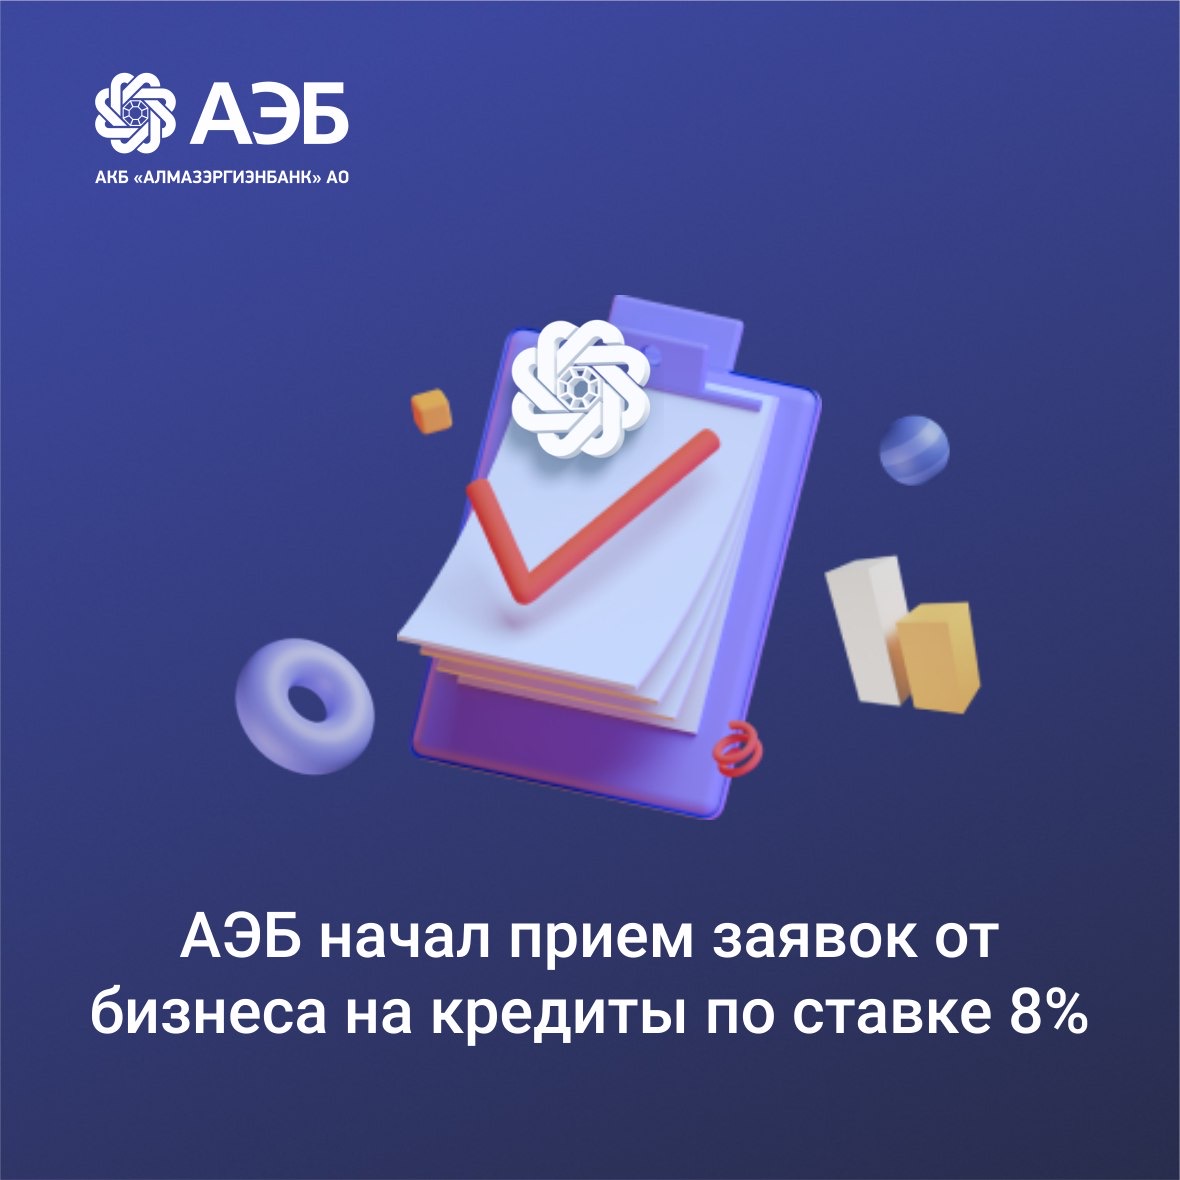 АЭБ начал прием заявок от бизнеса на кредит по ставке 8%